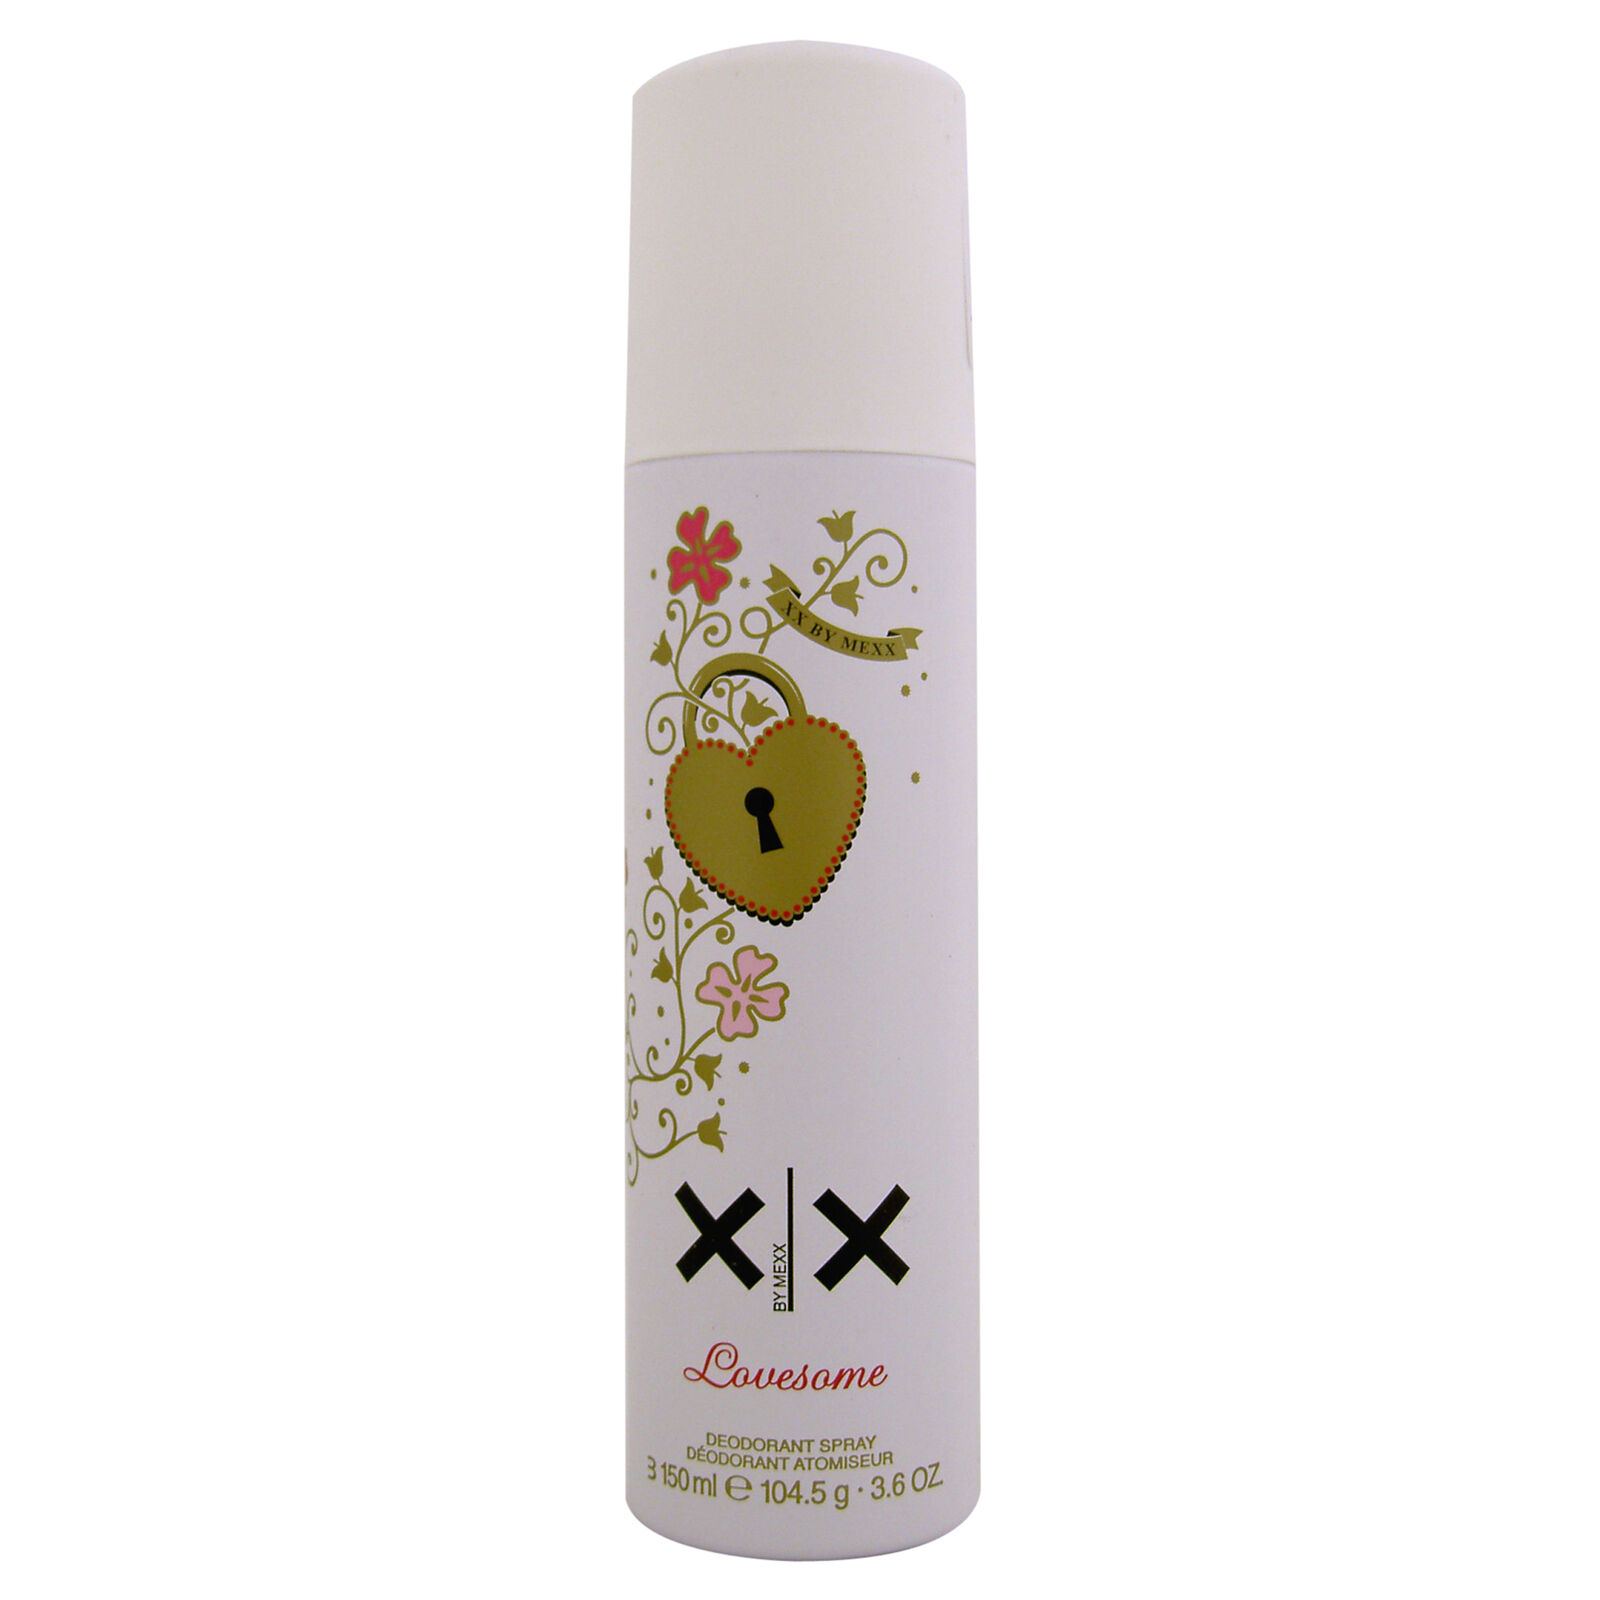 Mexx Lovesome Deodorant Spray 150ml